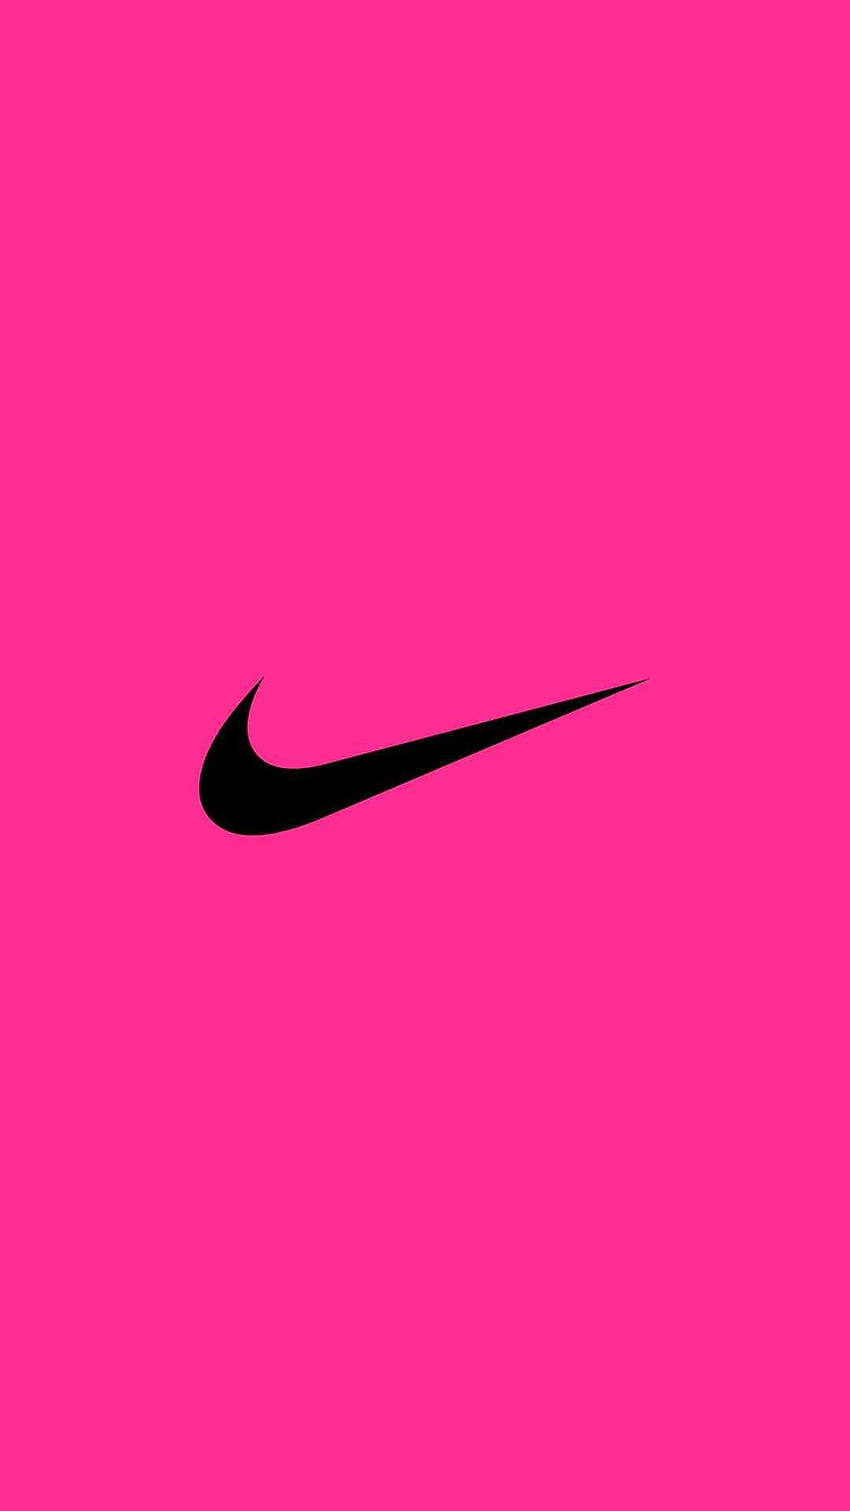 Bức hình nền Nike hồng làm từ những hạt pha lê ánh kim, màu sắc tươi sáng và nổi bật cùng thiết kế độc đáo, đây chắc chắn sẽ là một trong những gợi ý tuyệt vời để trang trí màn hình điện thoại của bạn.